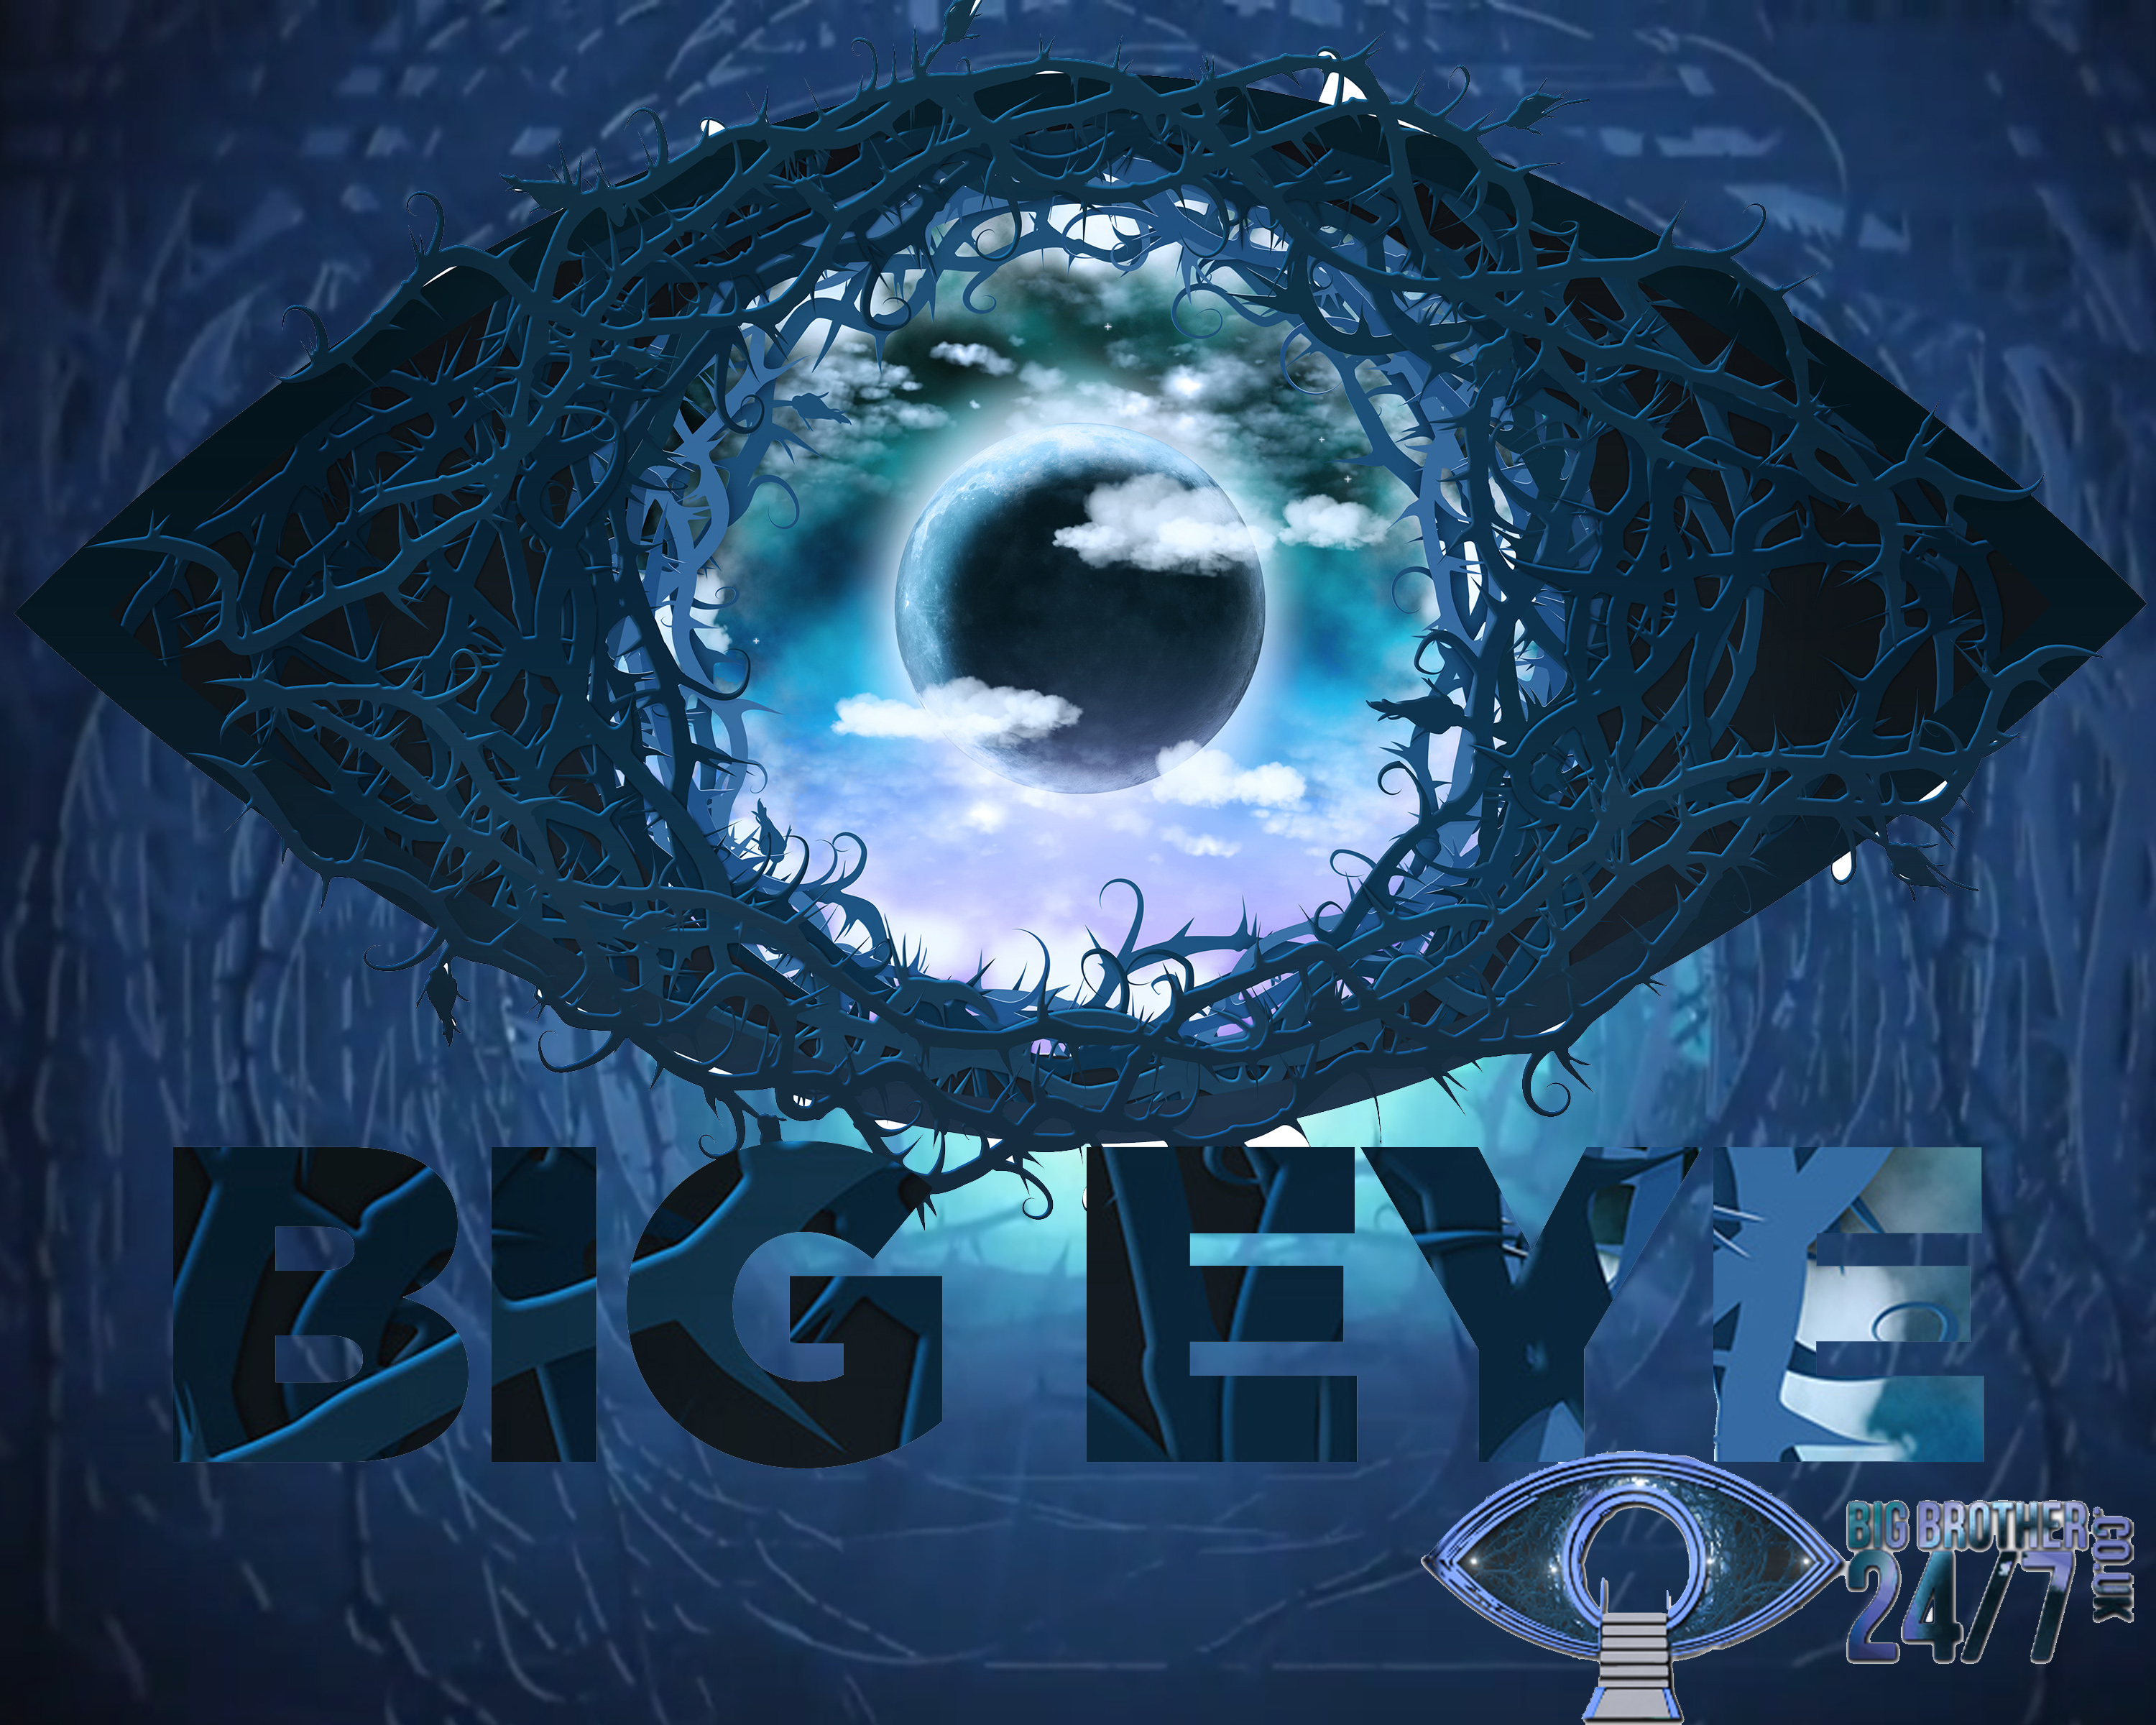 Podcast: Celebrity Big Brother’s Big Eye Episode 1